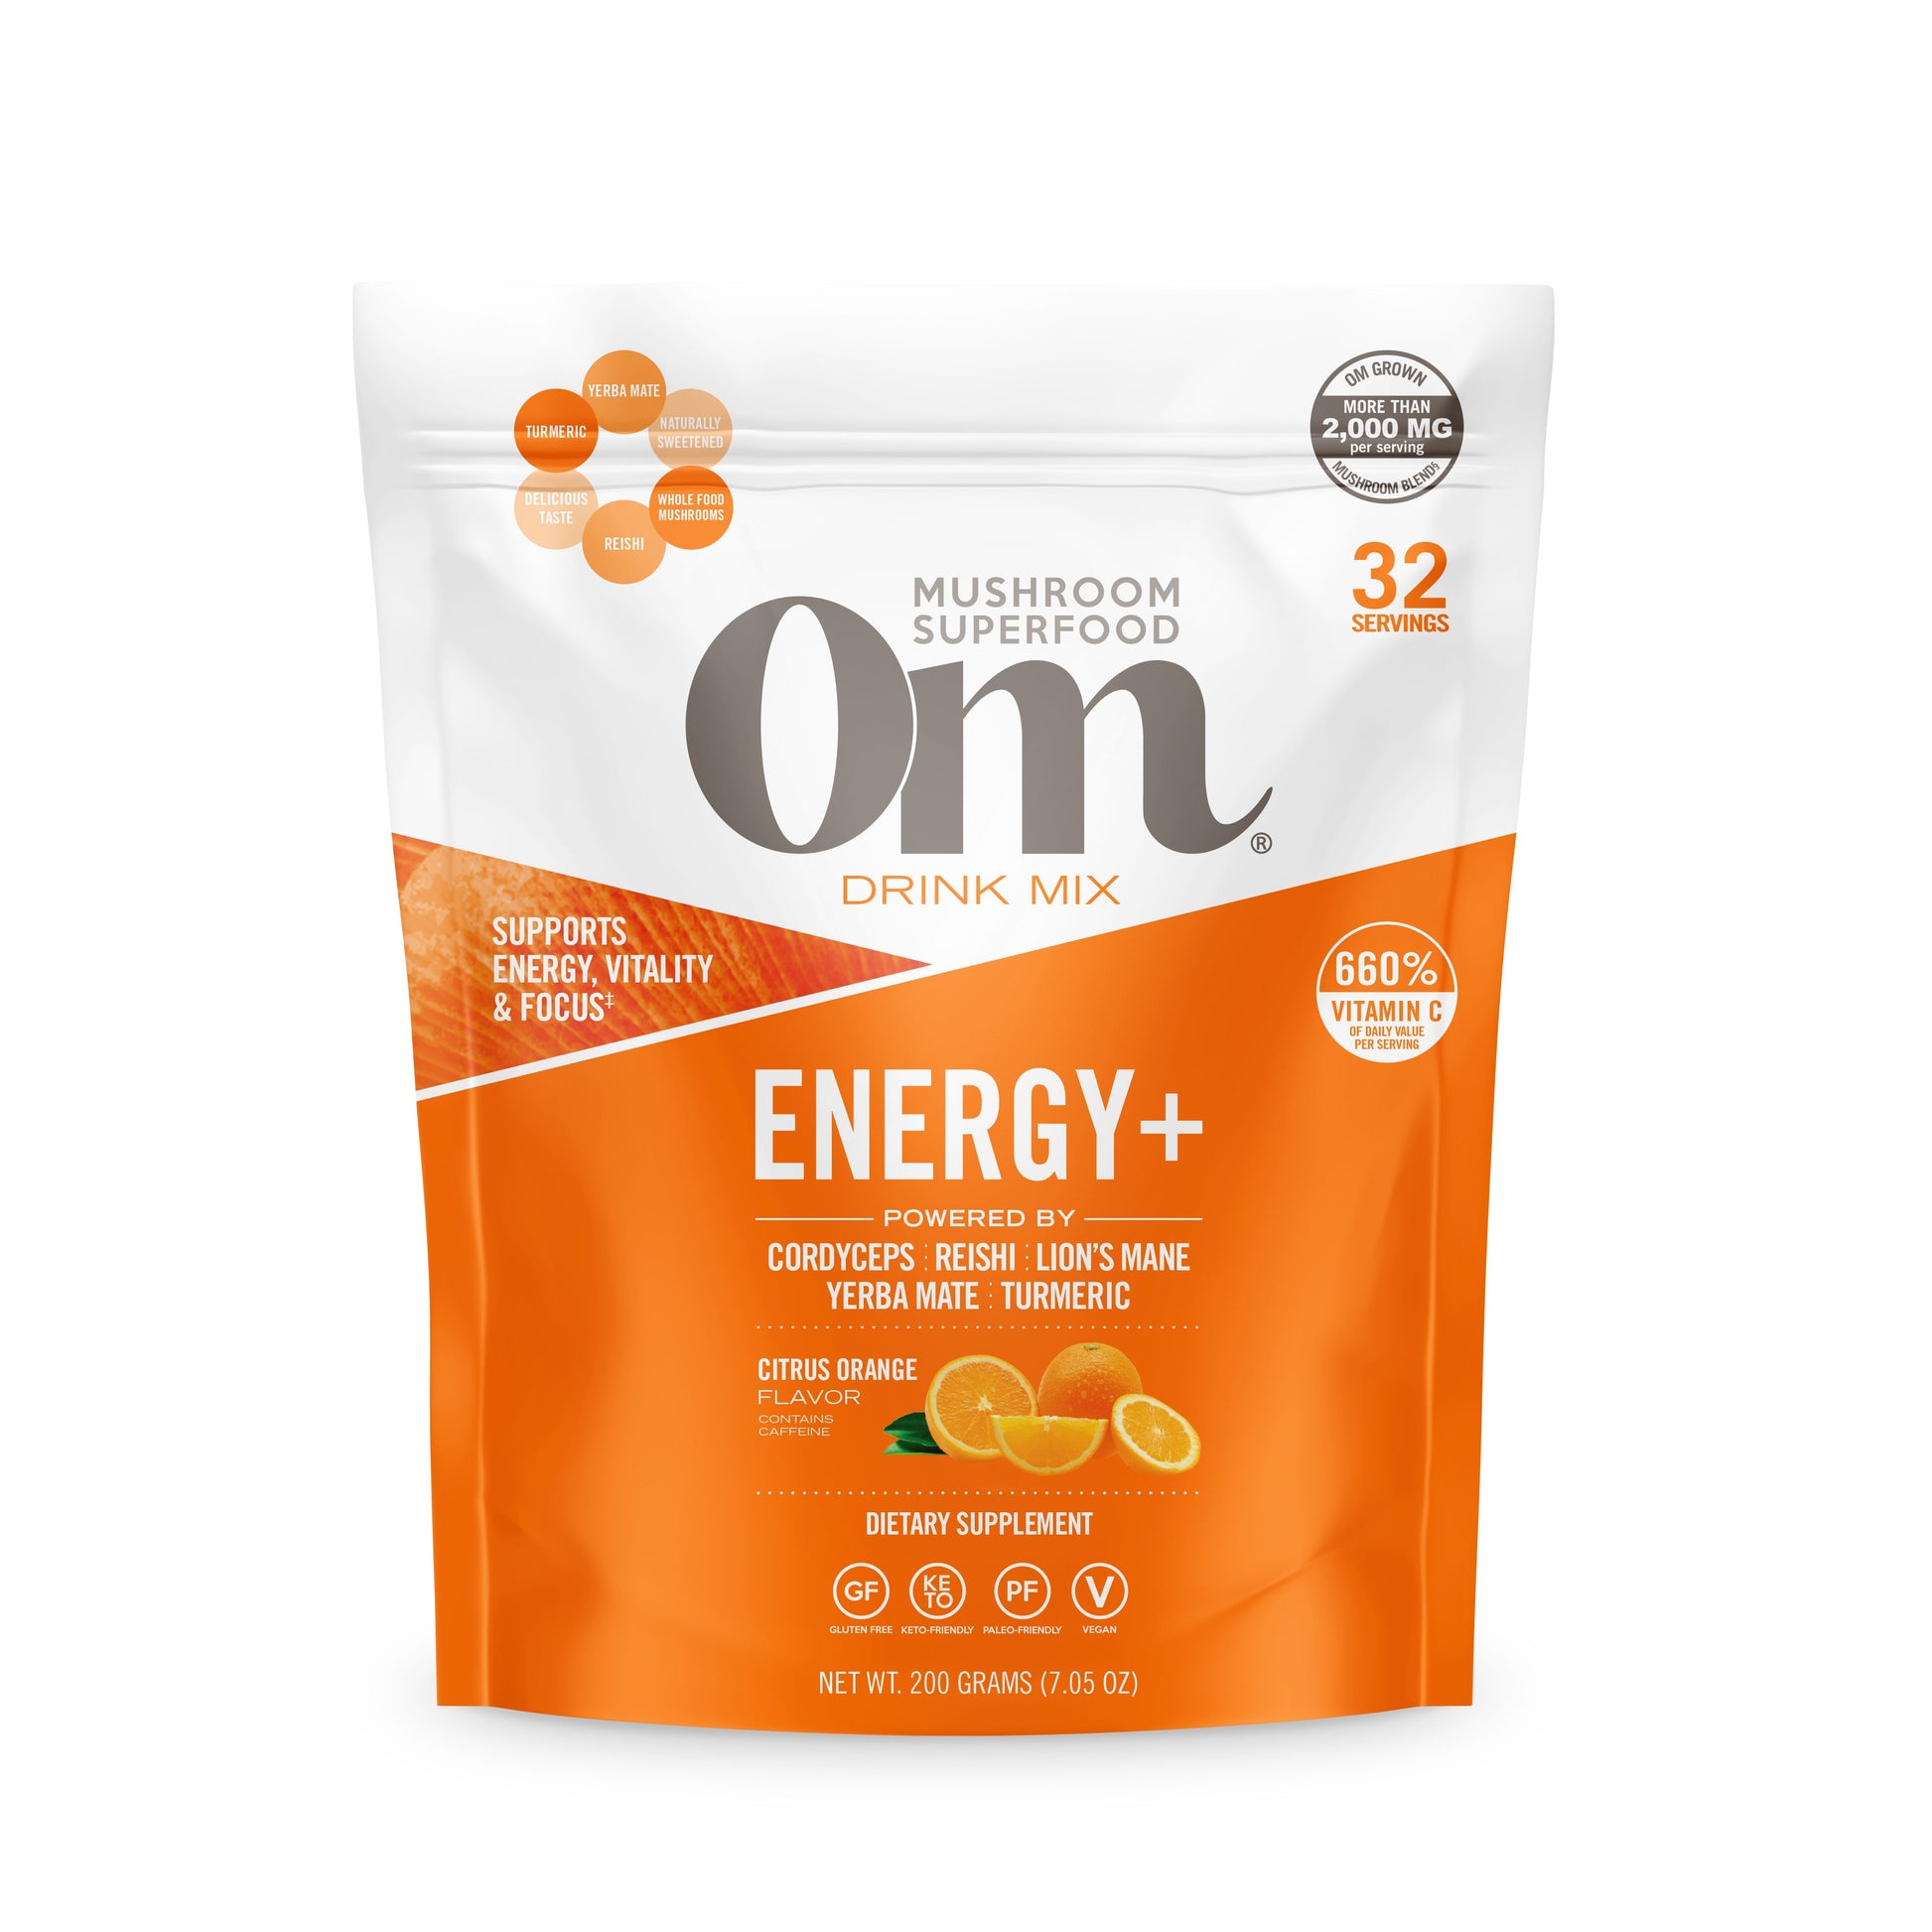 Om Citrus Orange Energy+